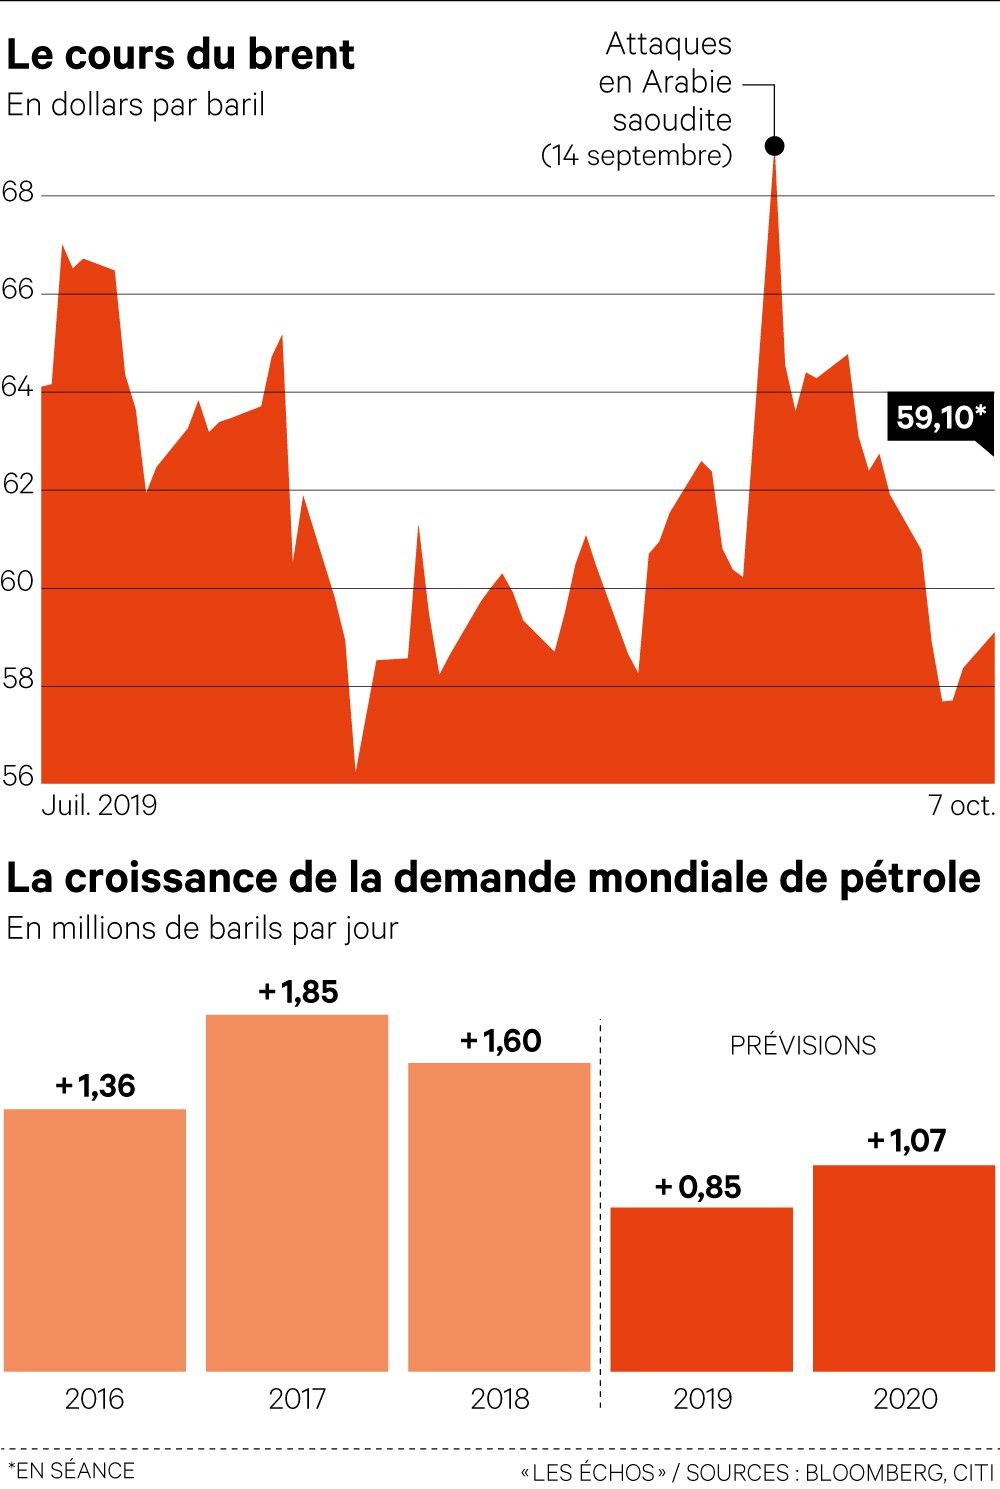 Pétrole: des prix relativement stables malgré les turbulences géopolitiques  - Chronique des matières premières